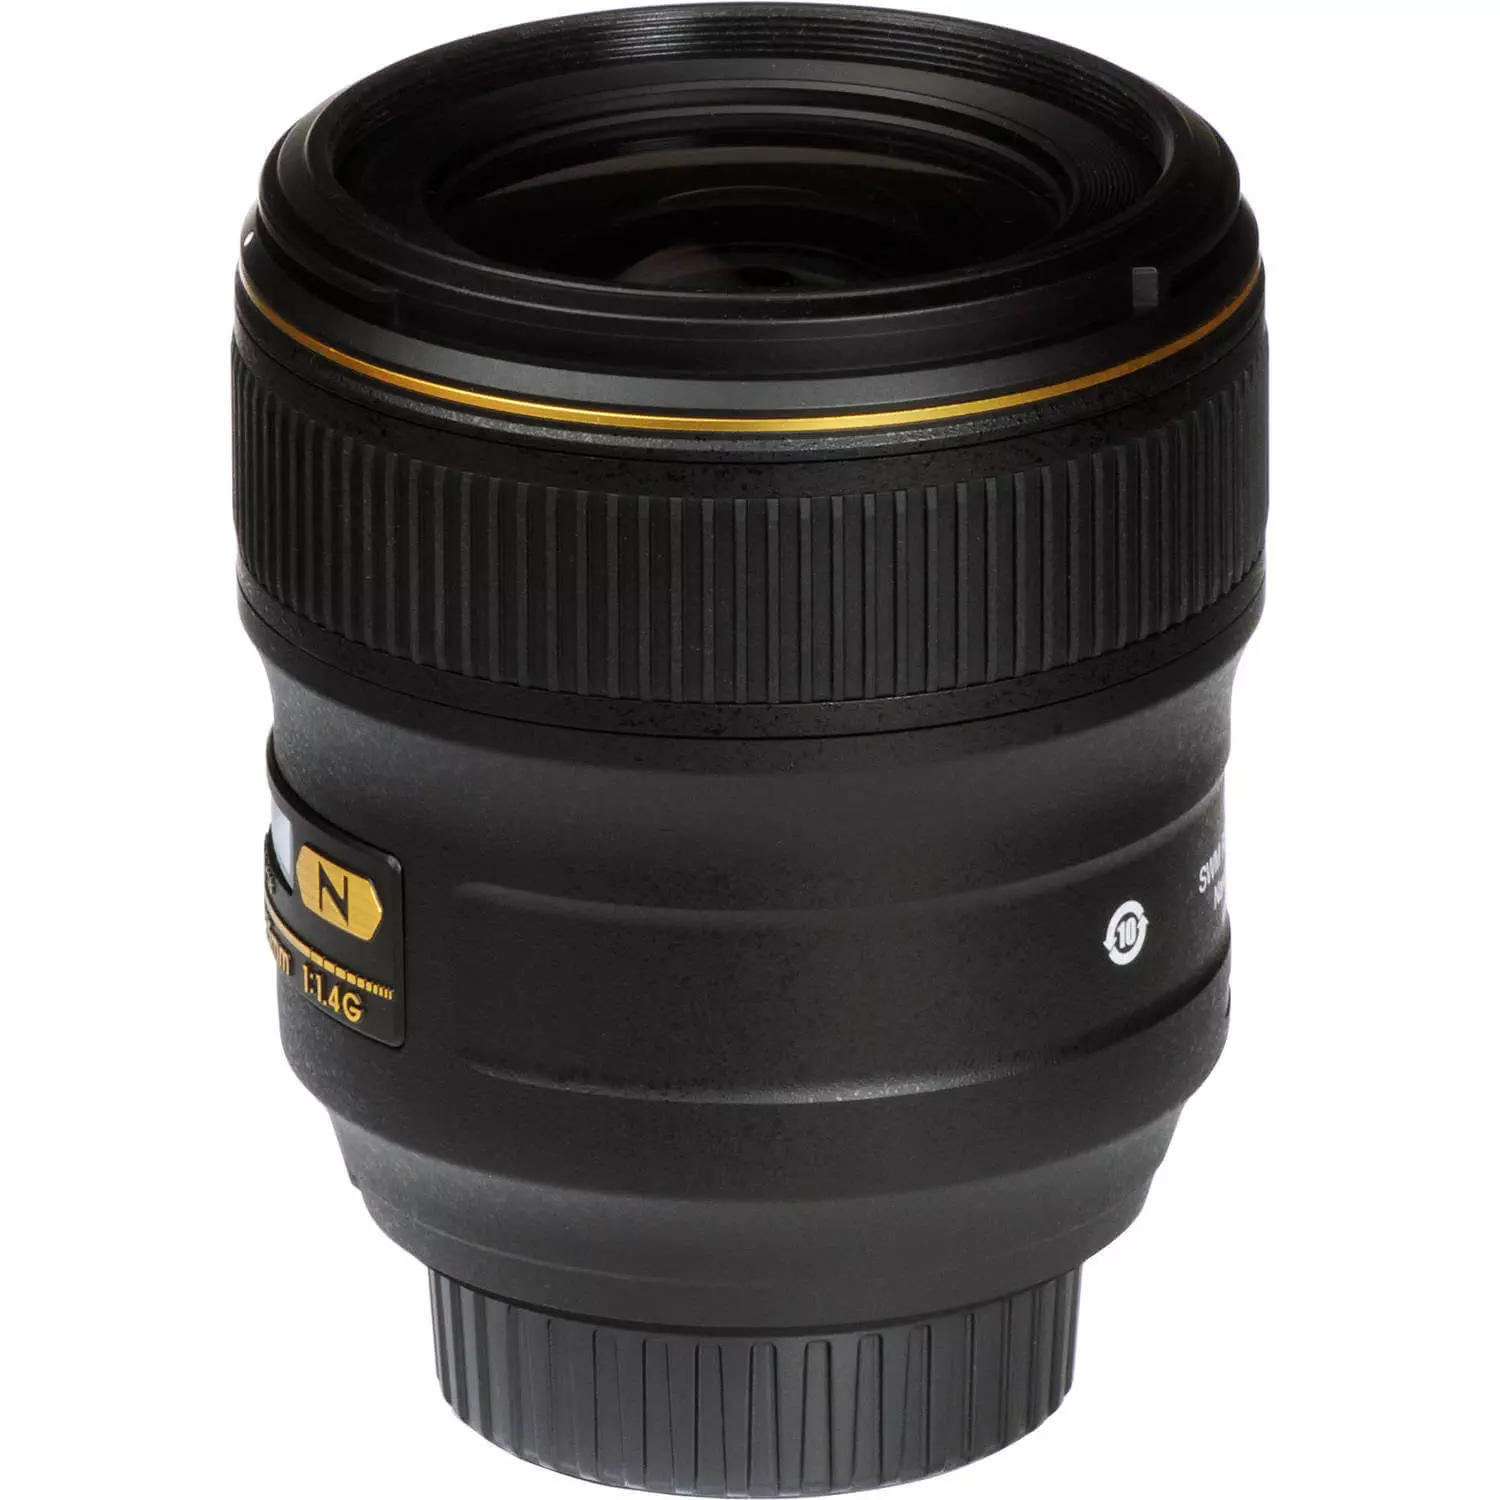 Nikon AF-S NIKKOR 35mm f1.4G Lens